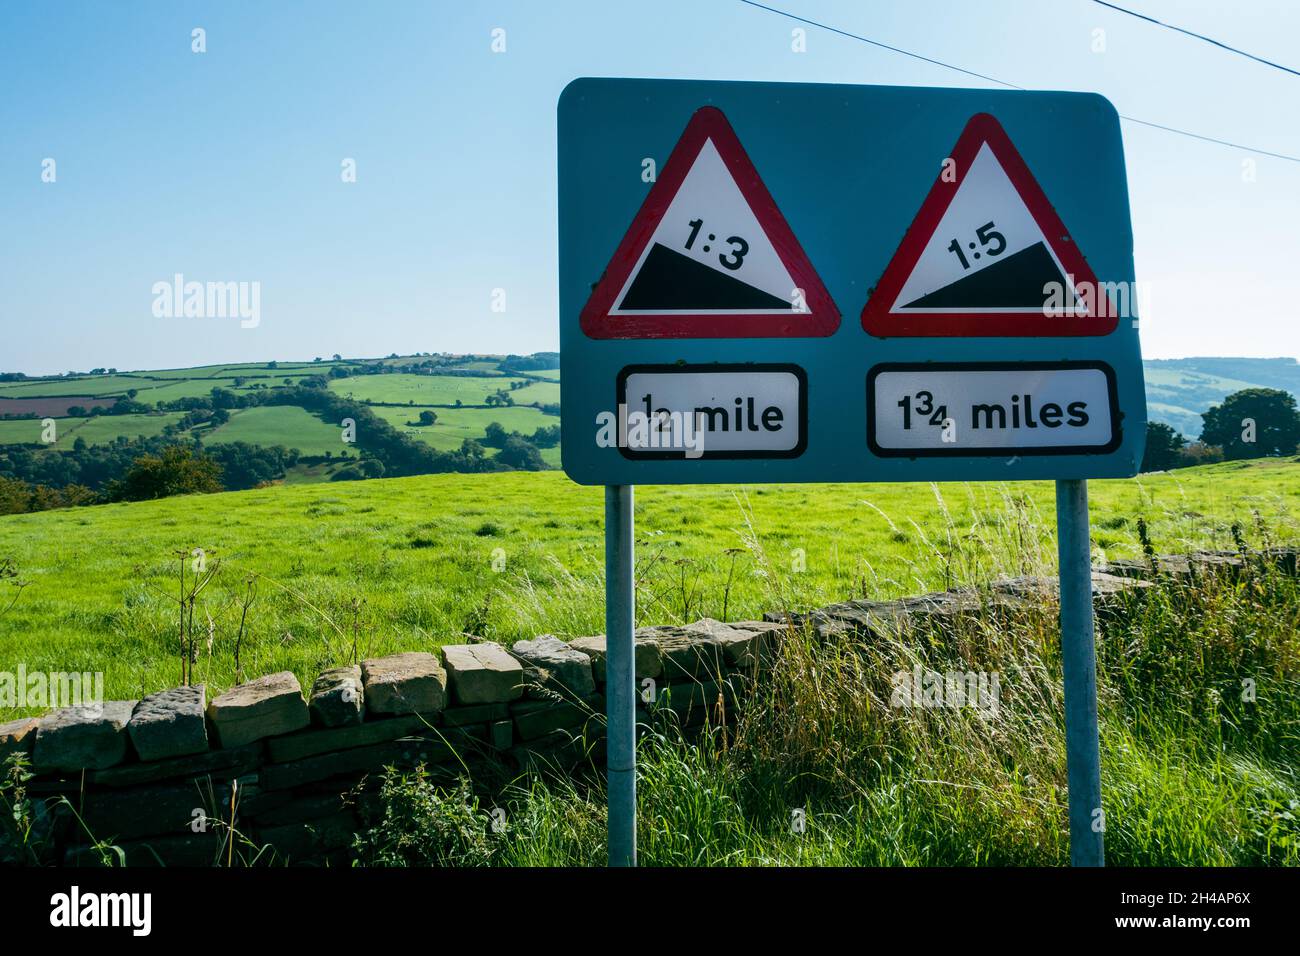 Strade ripide nel North York Moors National Park - segnaletica stradale 1:3 e 1:5, North Yorkshire, Regno Unito Foto Stock